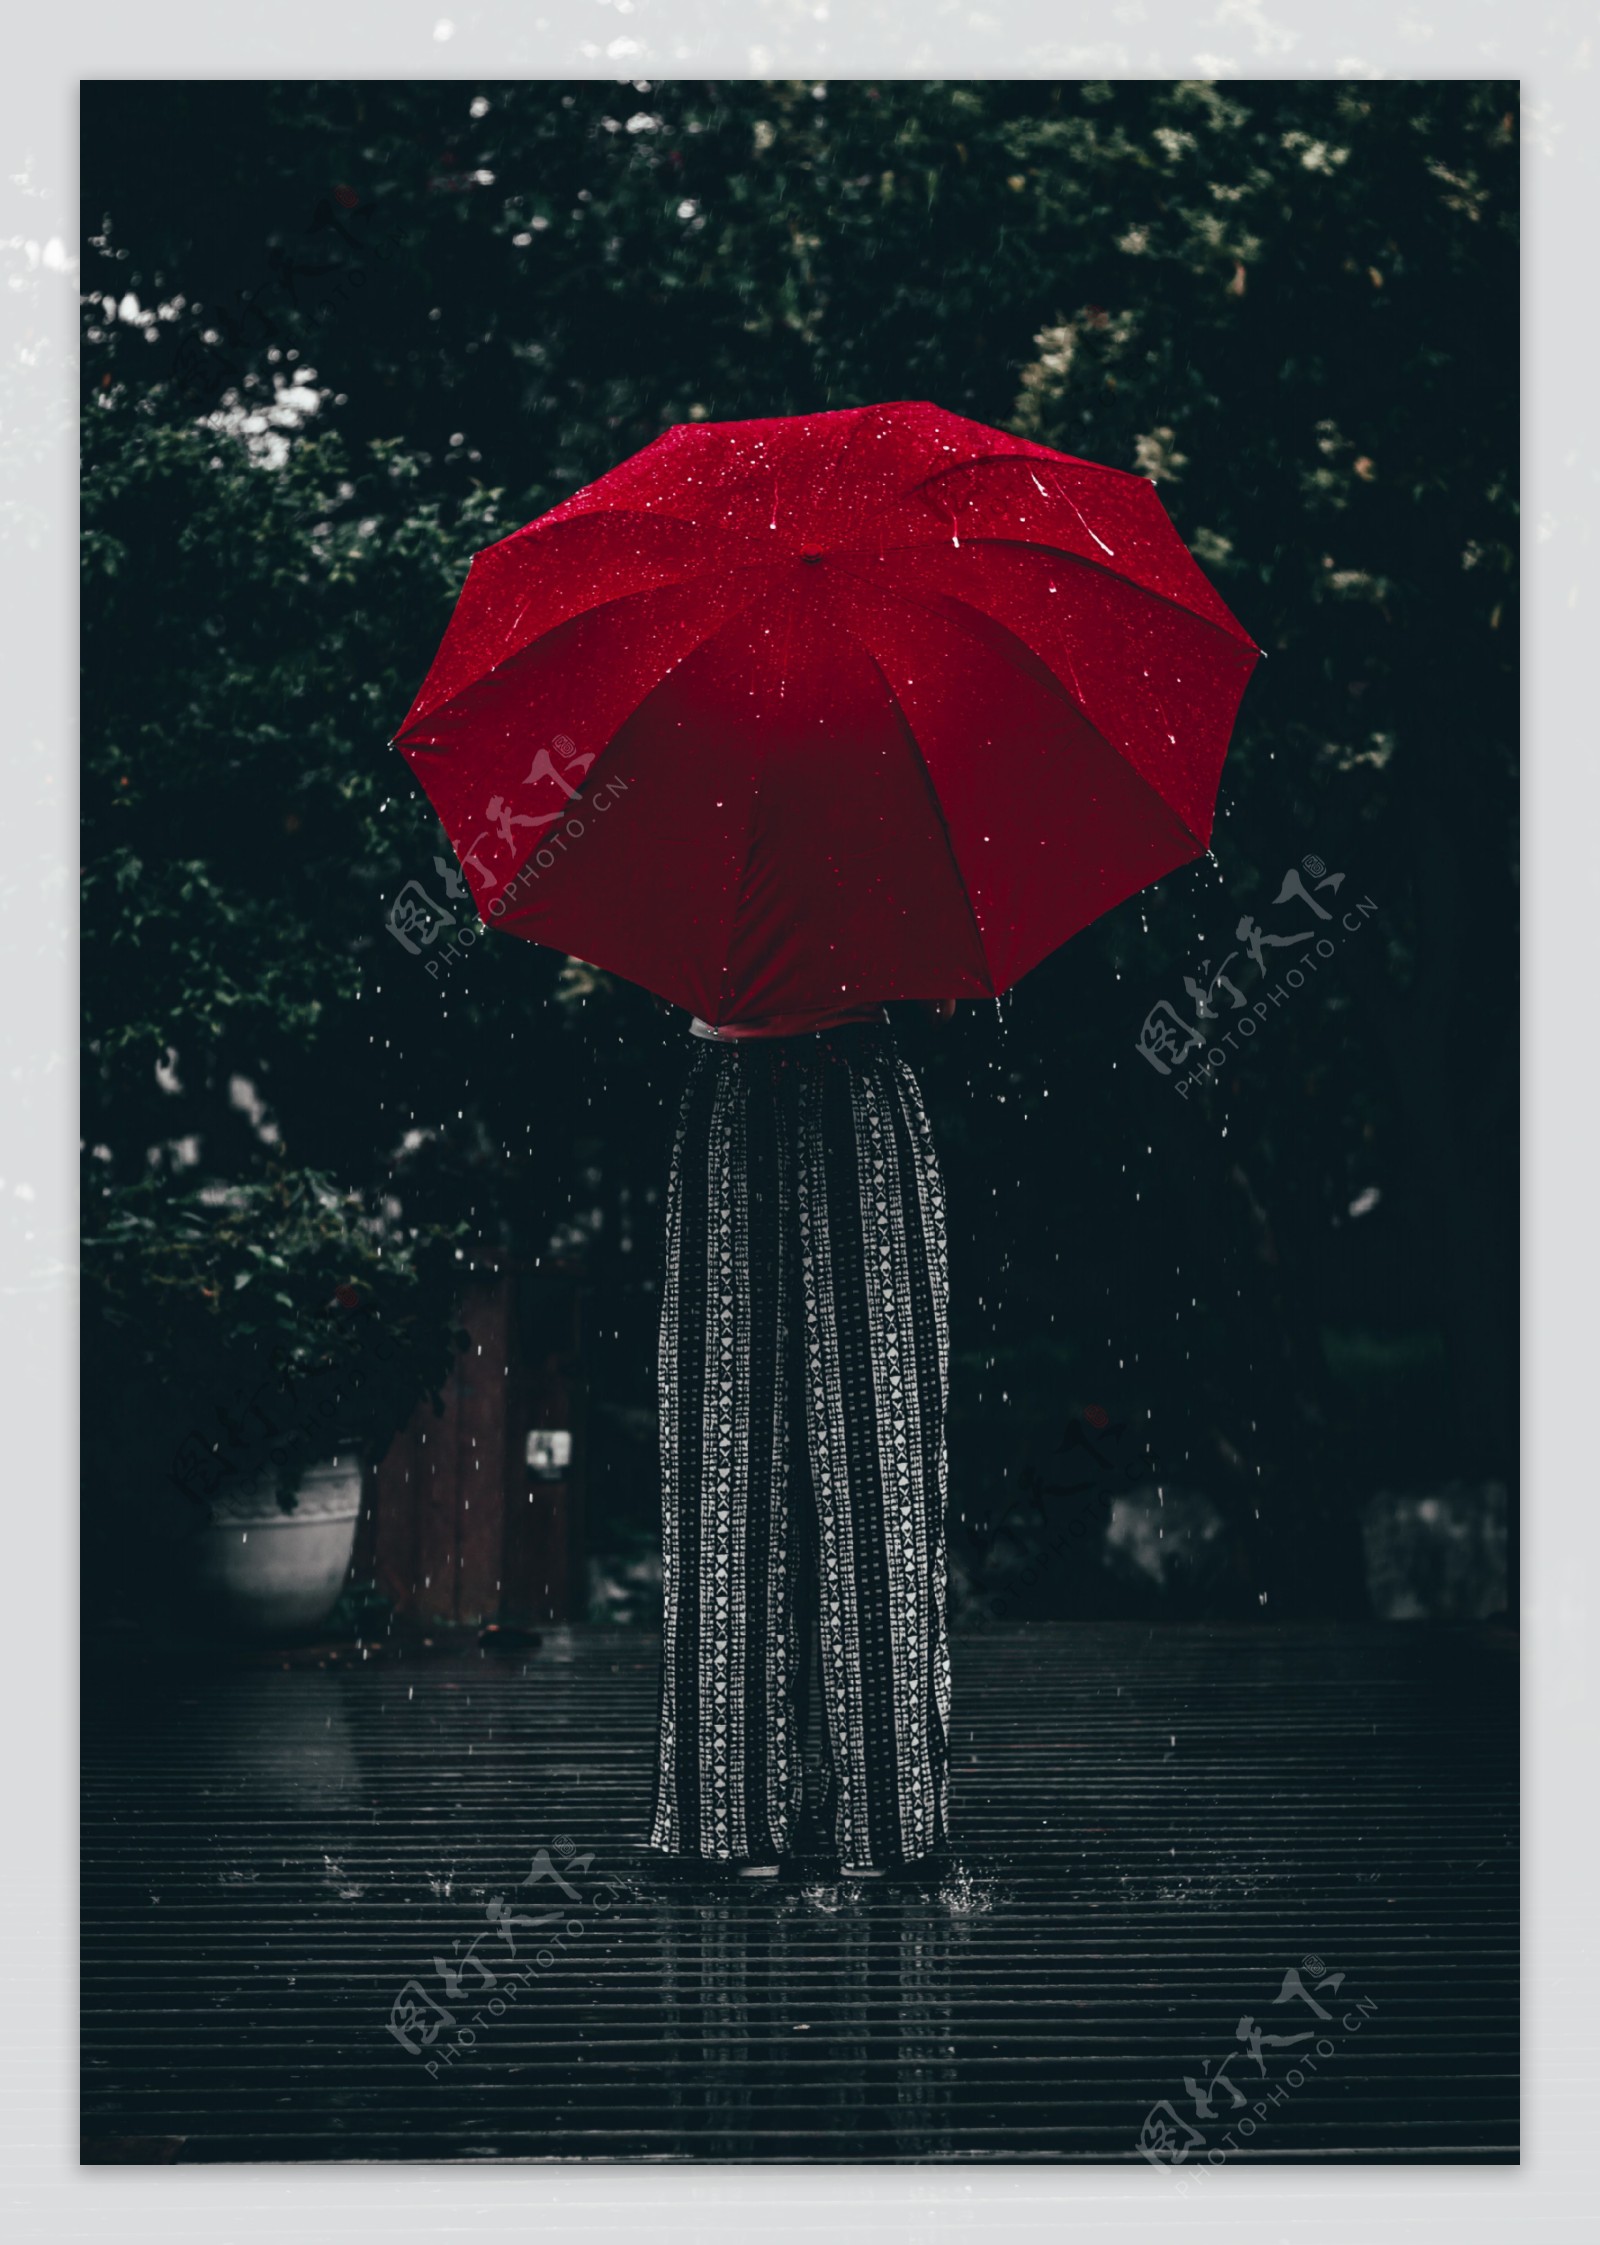 红伞女孩